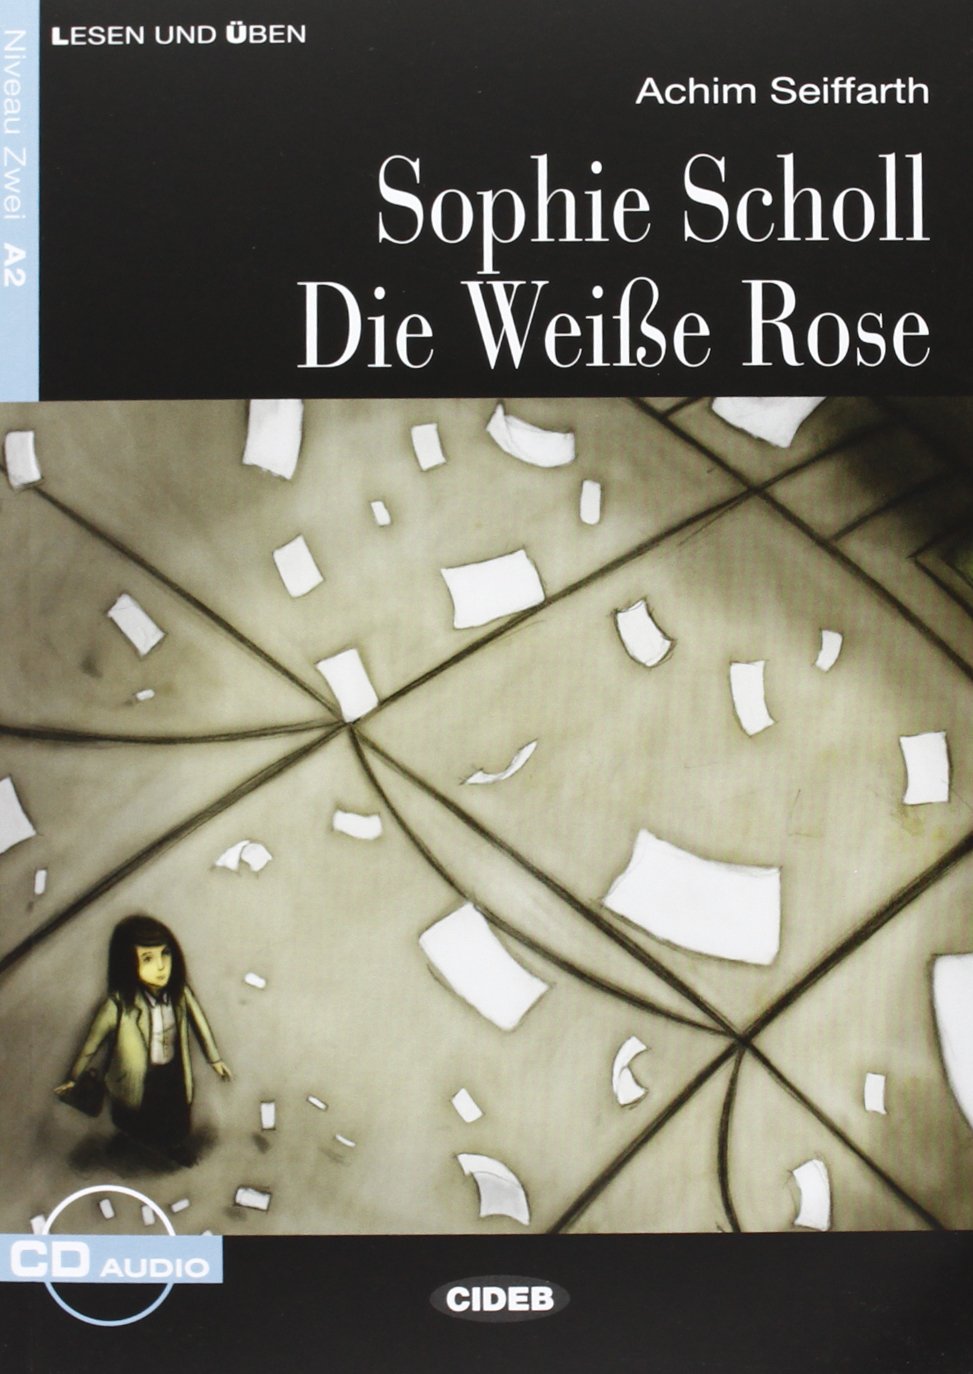 Achim Seiffarth Lesen und Uben Niveau Zwei (A2): Sophie Scholl - die WeiBe Rose + CD 